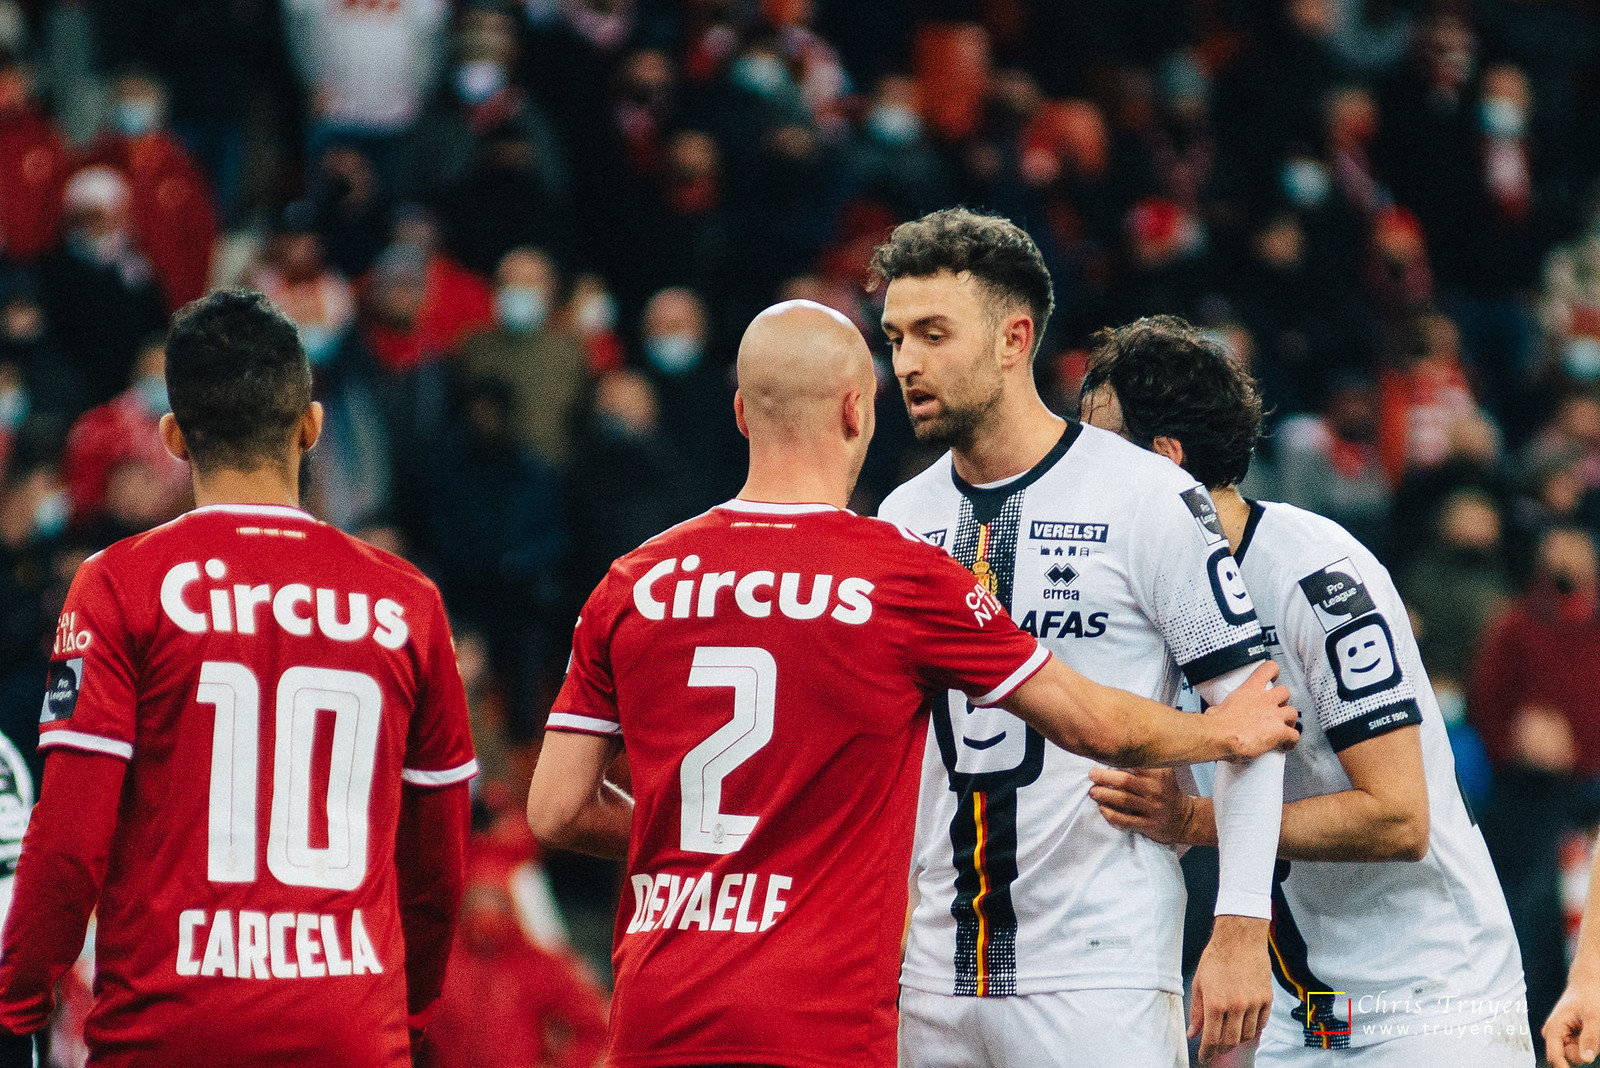 R Standard de Liège - KV Mechelen (1-2)